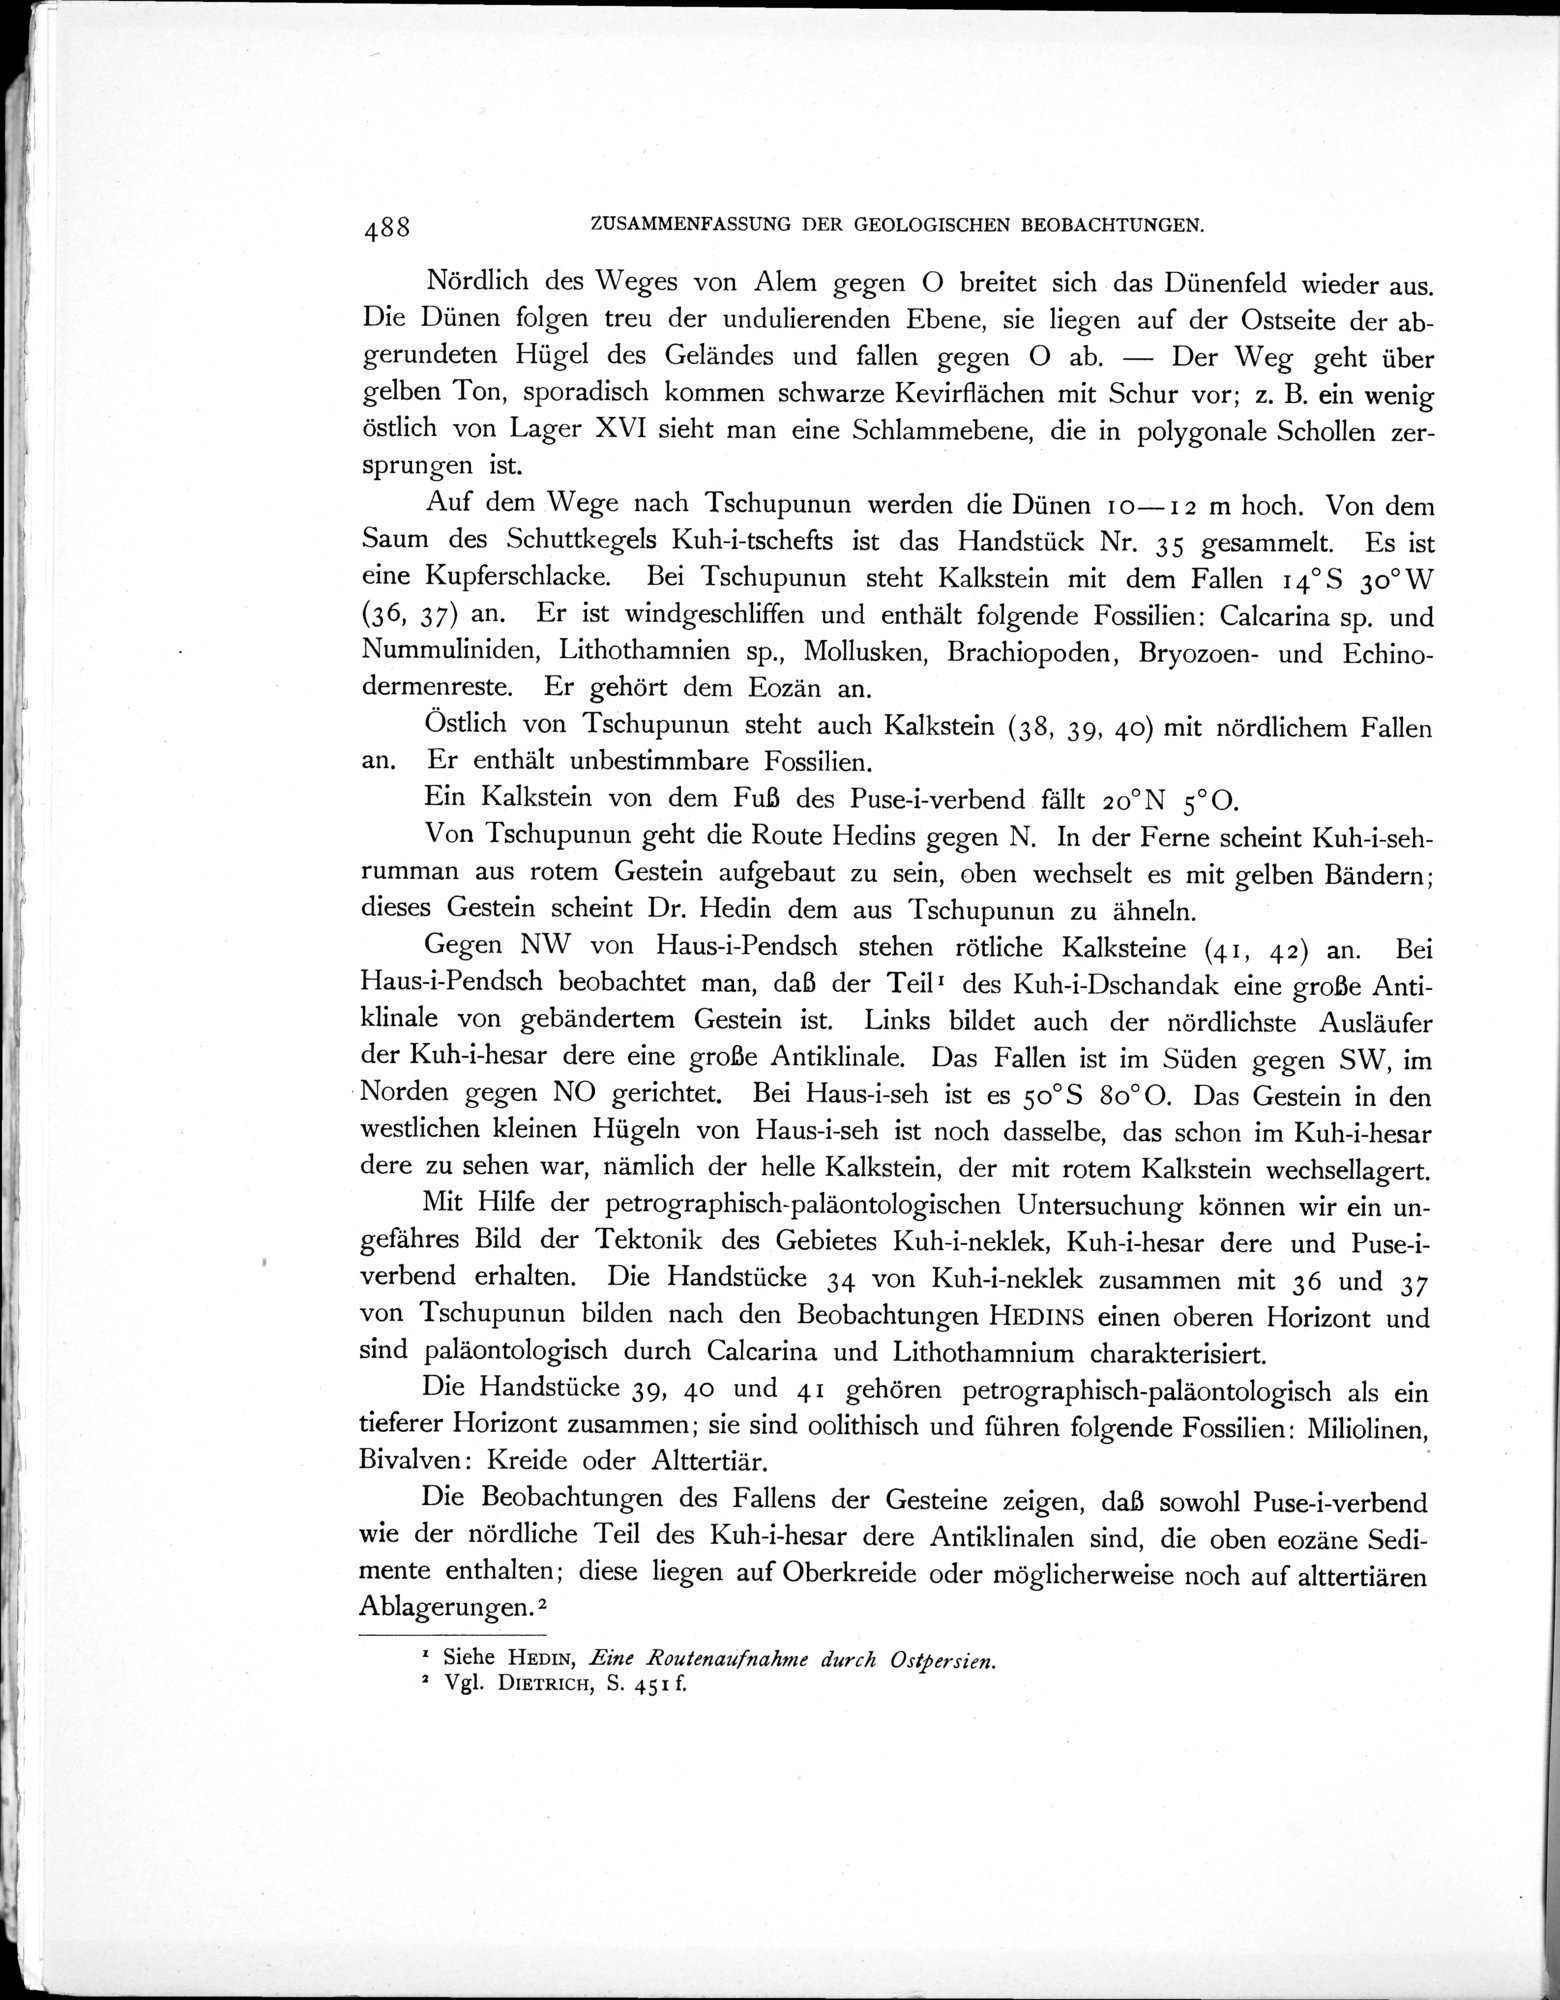 Eine Routenaufnahme durch Ostpersien : vol.2 / Page 610 (Grayscale High Resolution Image)